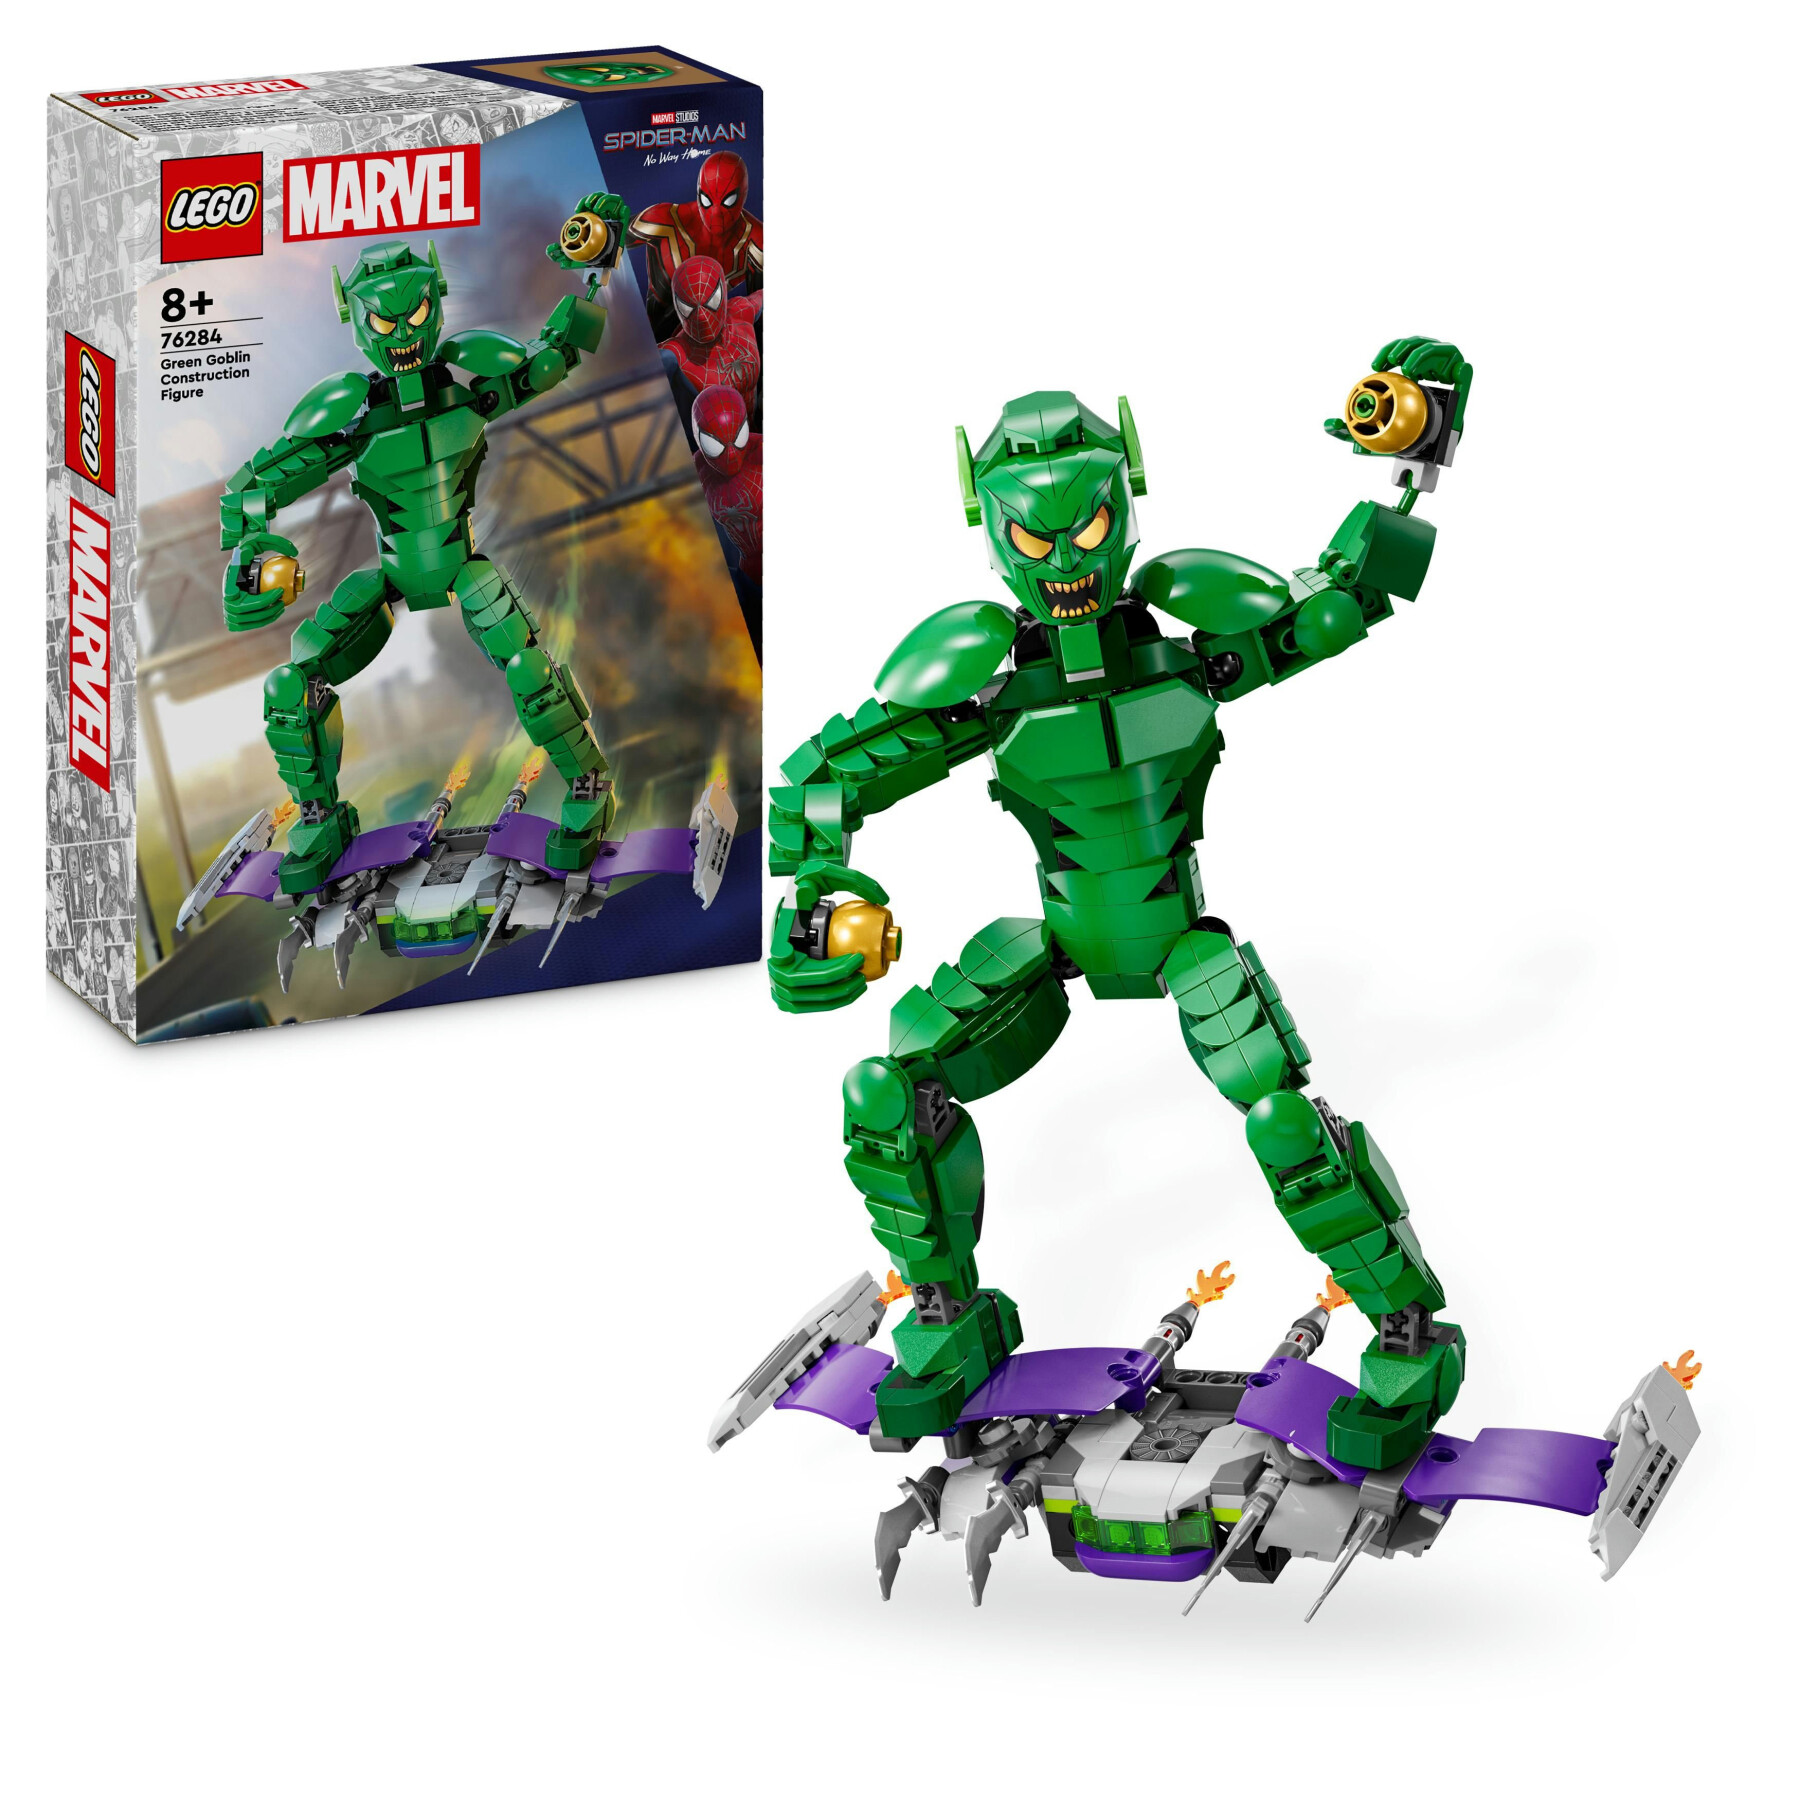 Lego marvel 76284 personaggio costruibile di goblin, gioco per bambini 8+, action figure snodabile del nemico di spider-man - LEGO SUPER HEROES